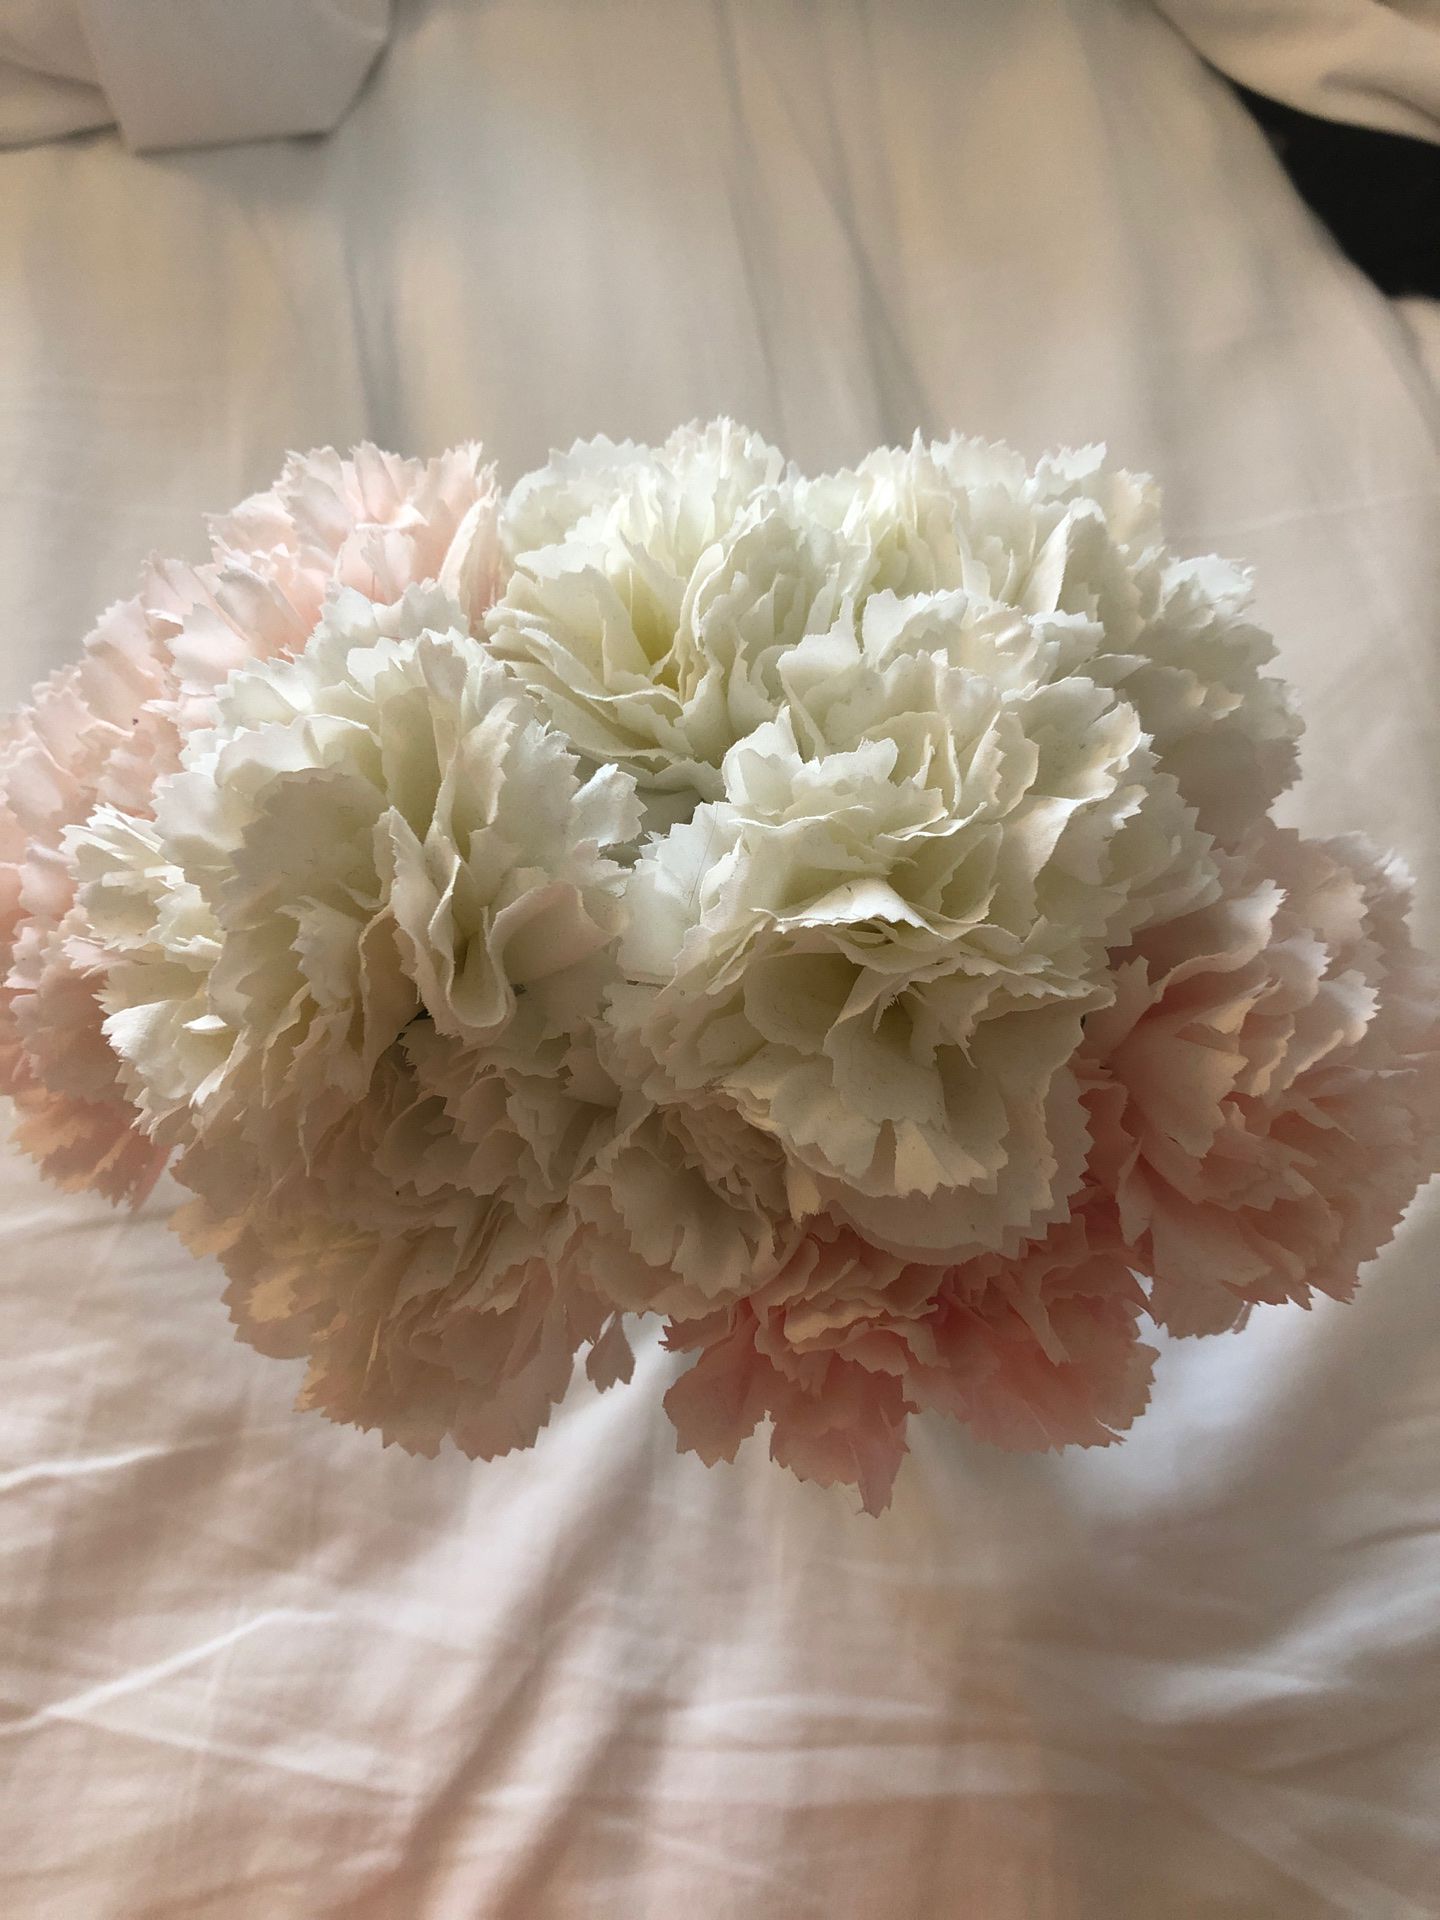 Carnations pink/white flower vase